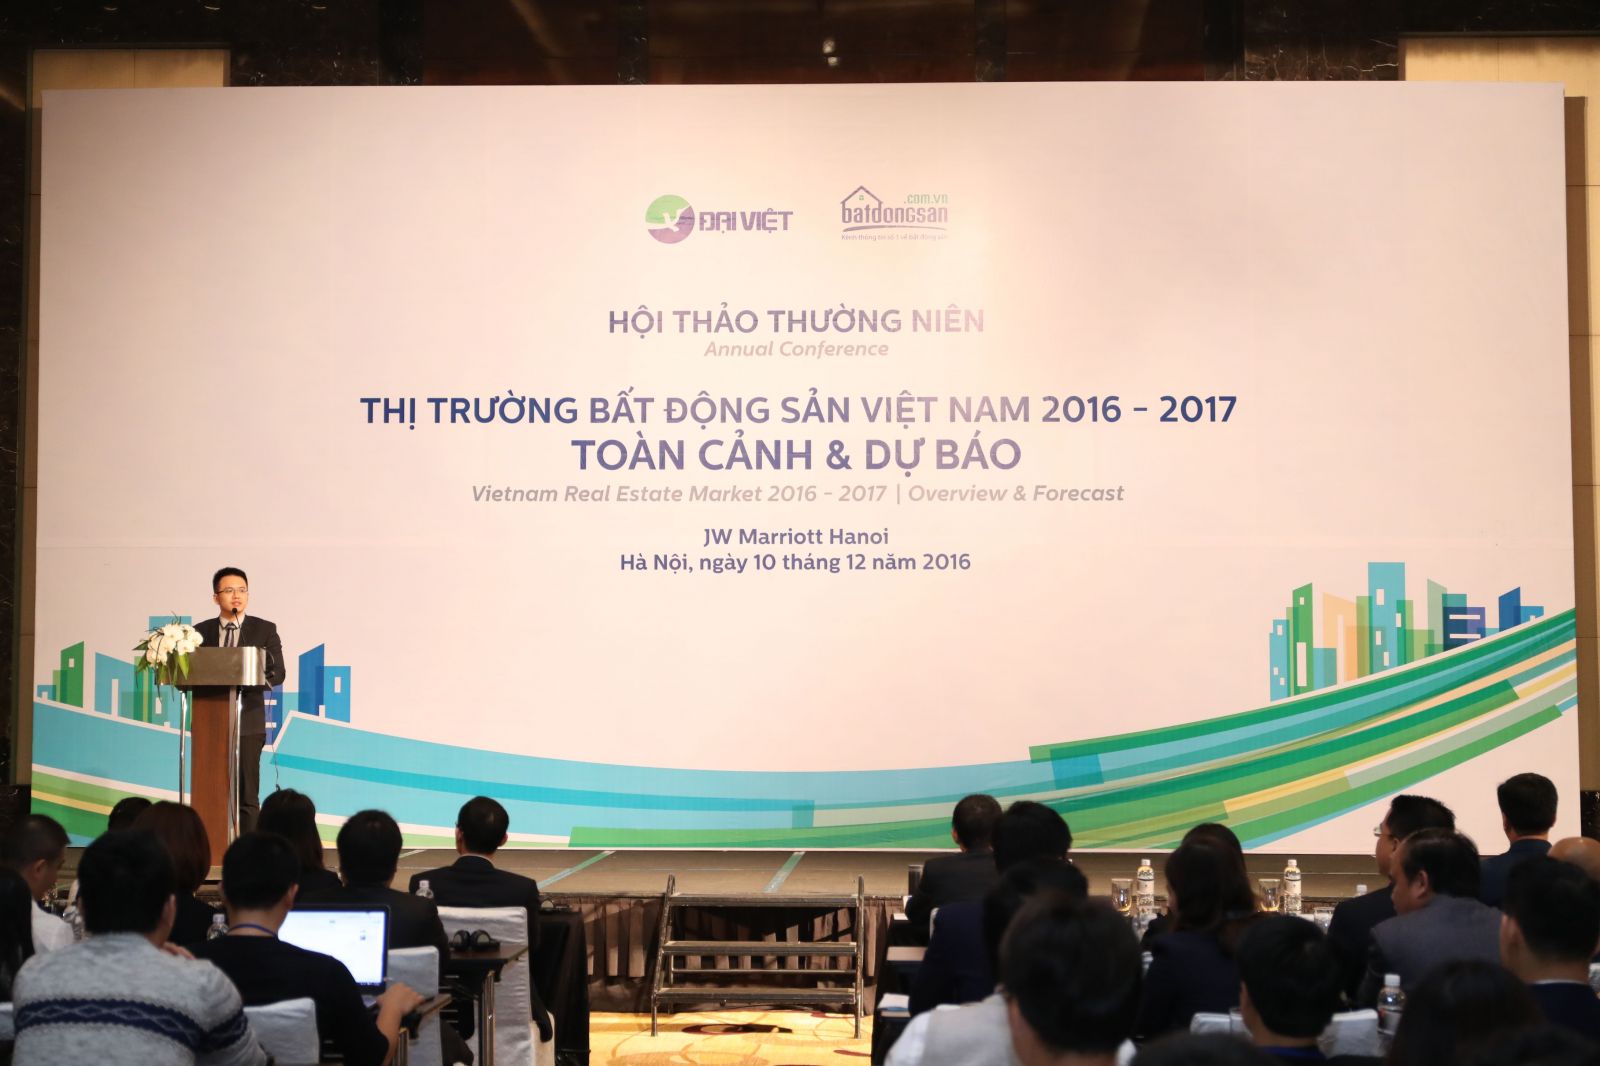 Hội thảo “Thị trường bất động sản Việt Nam 2016-2017 – Toàn cảnh và Dự báo” do Batdongsan.com.vn tổ chức diễn sẽ ra vào ngày 10/12 và 17/12 tại Hà Nội và Tp.HCM